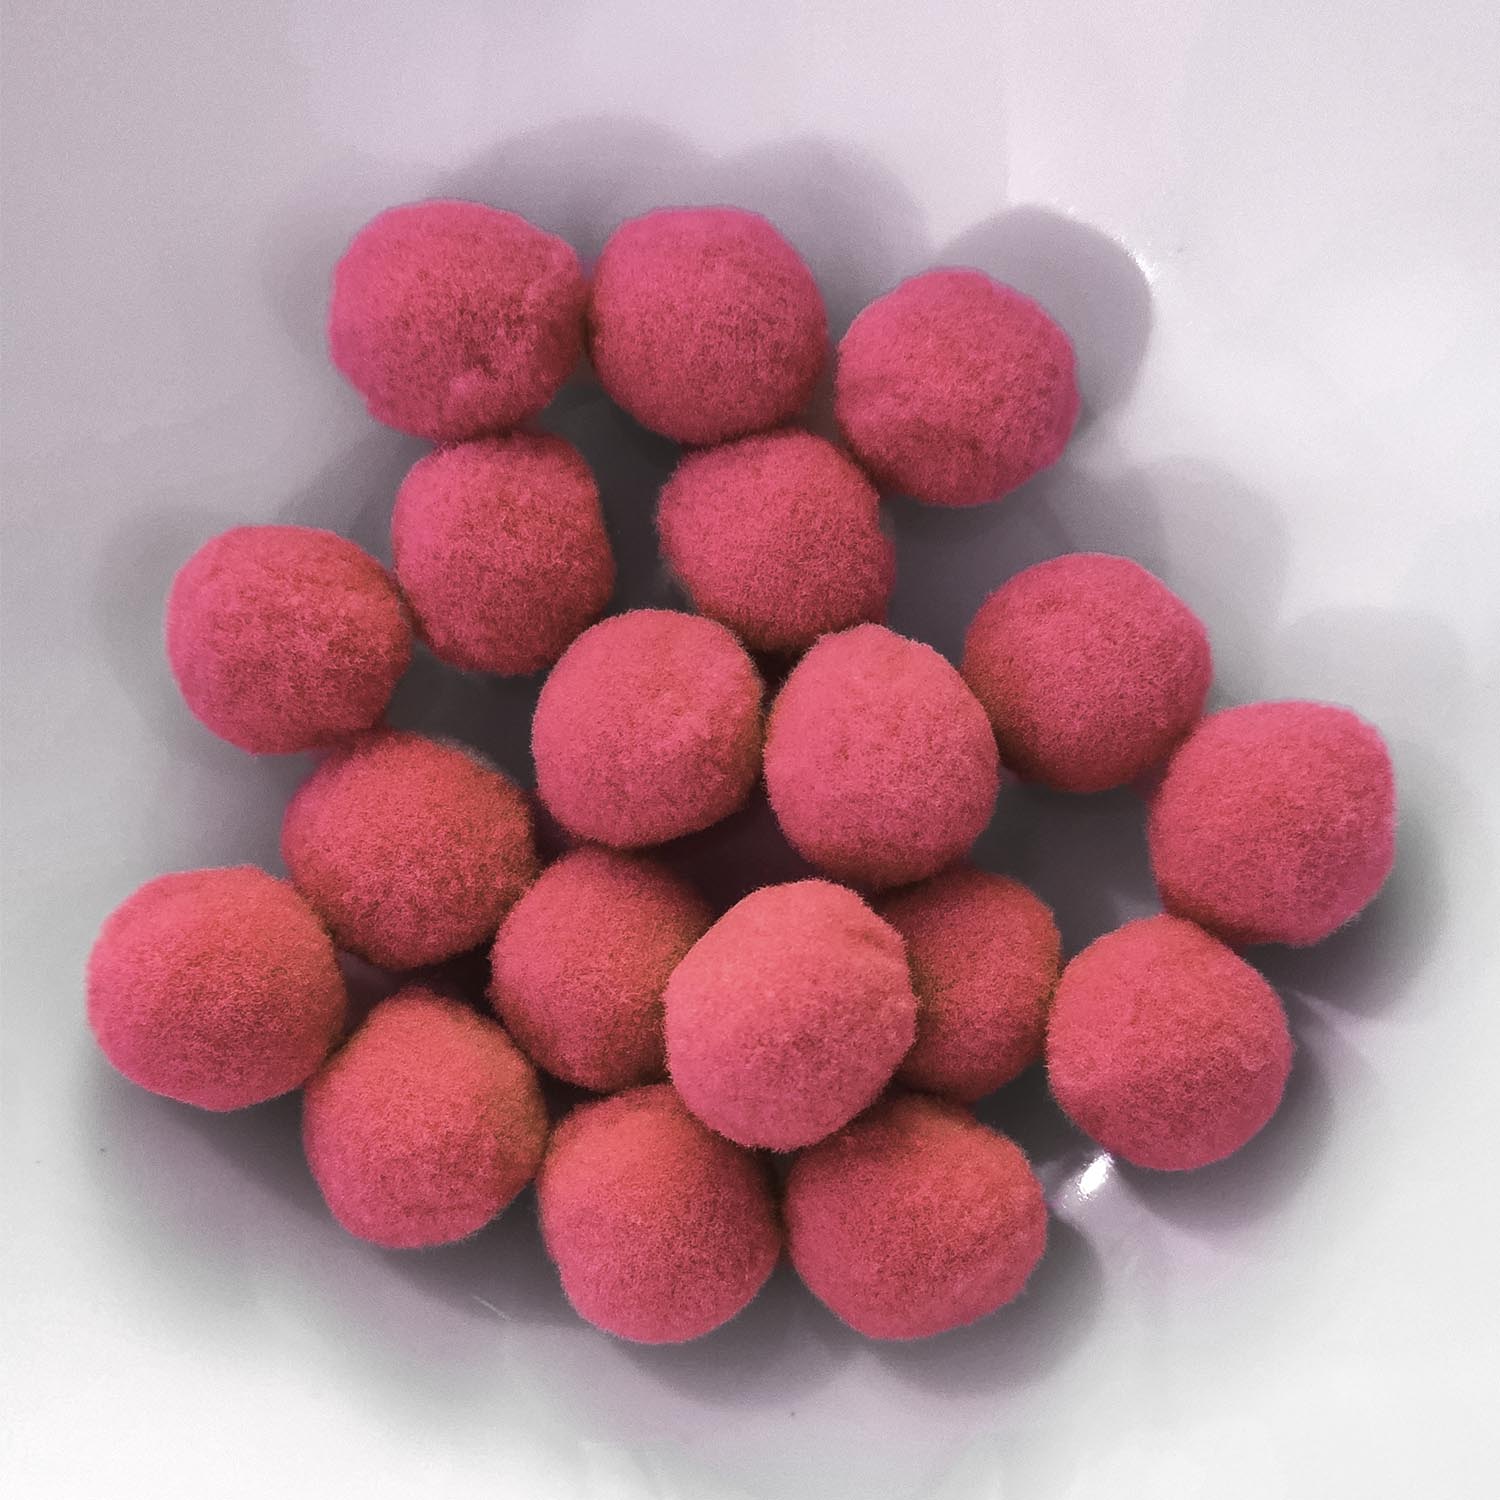 PomPon / Bälle aus Baumwolle - 25 mm / 20er Set - Rosa dunkel